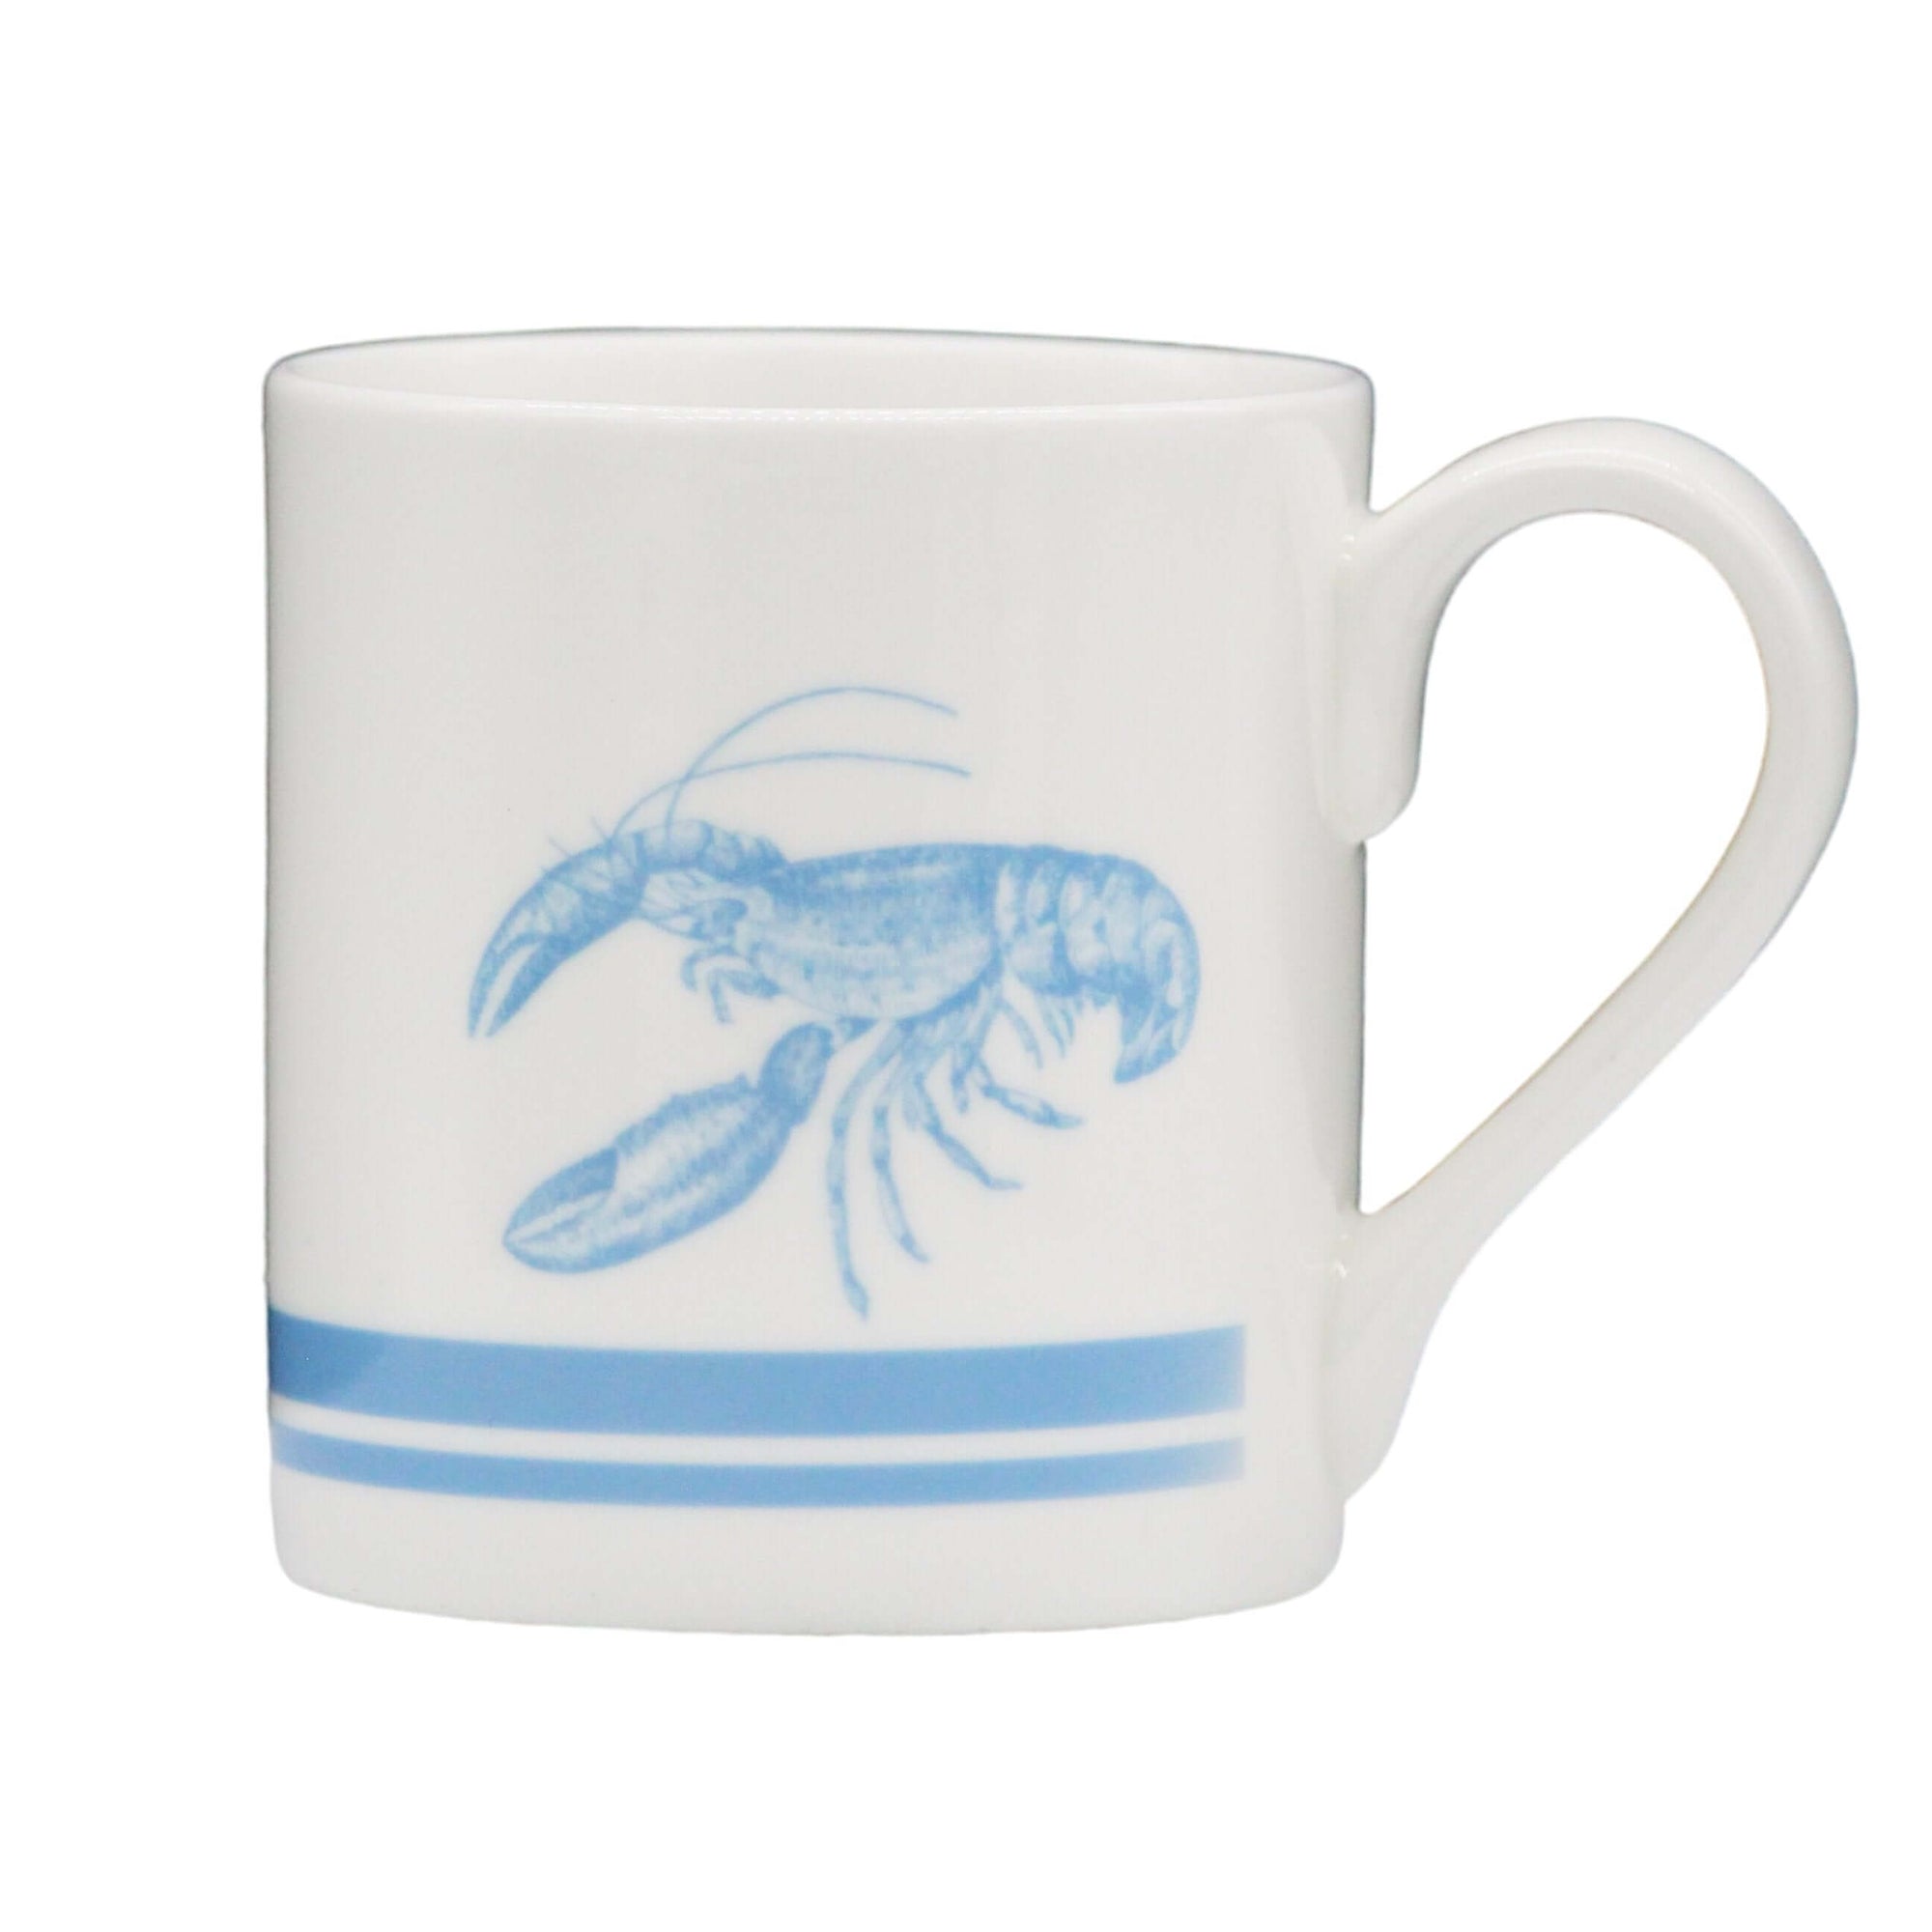 Kraken & Pinch "Pinch" Mug Mugs Mustard and Gray Ltd Shropshire UK